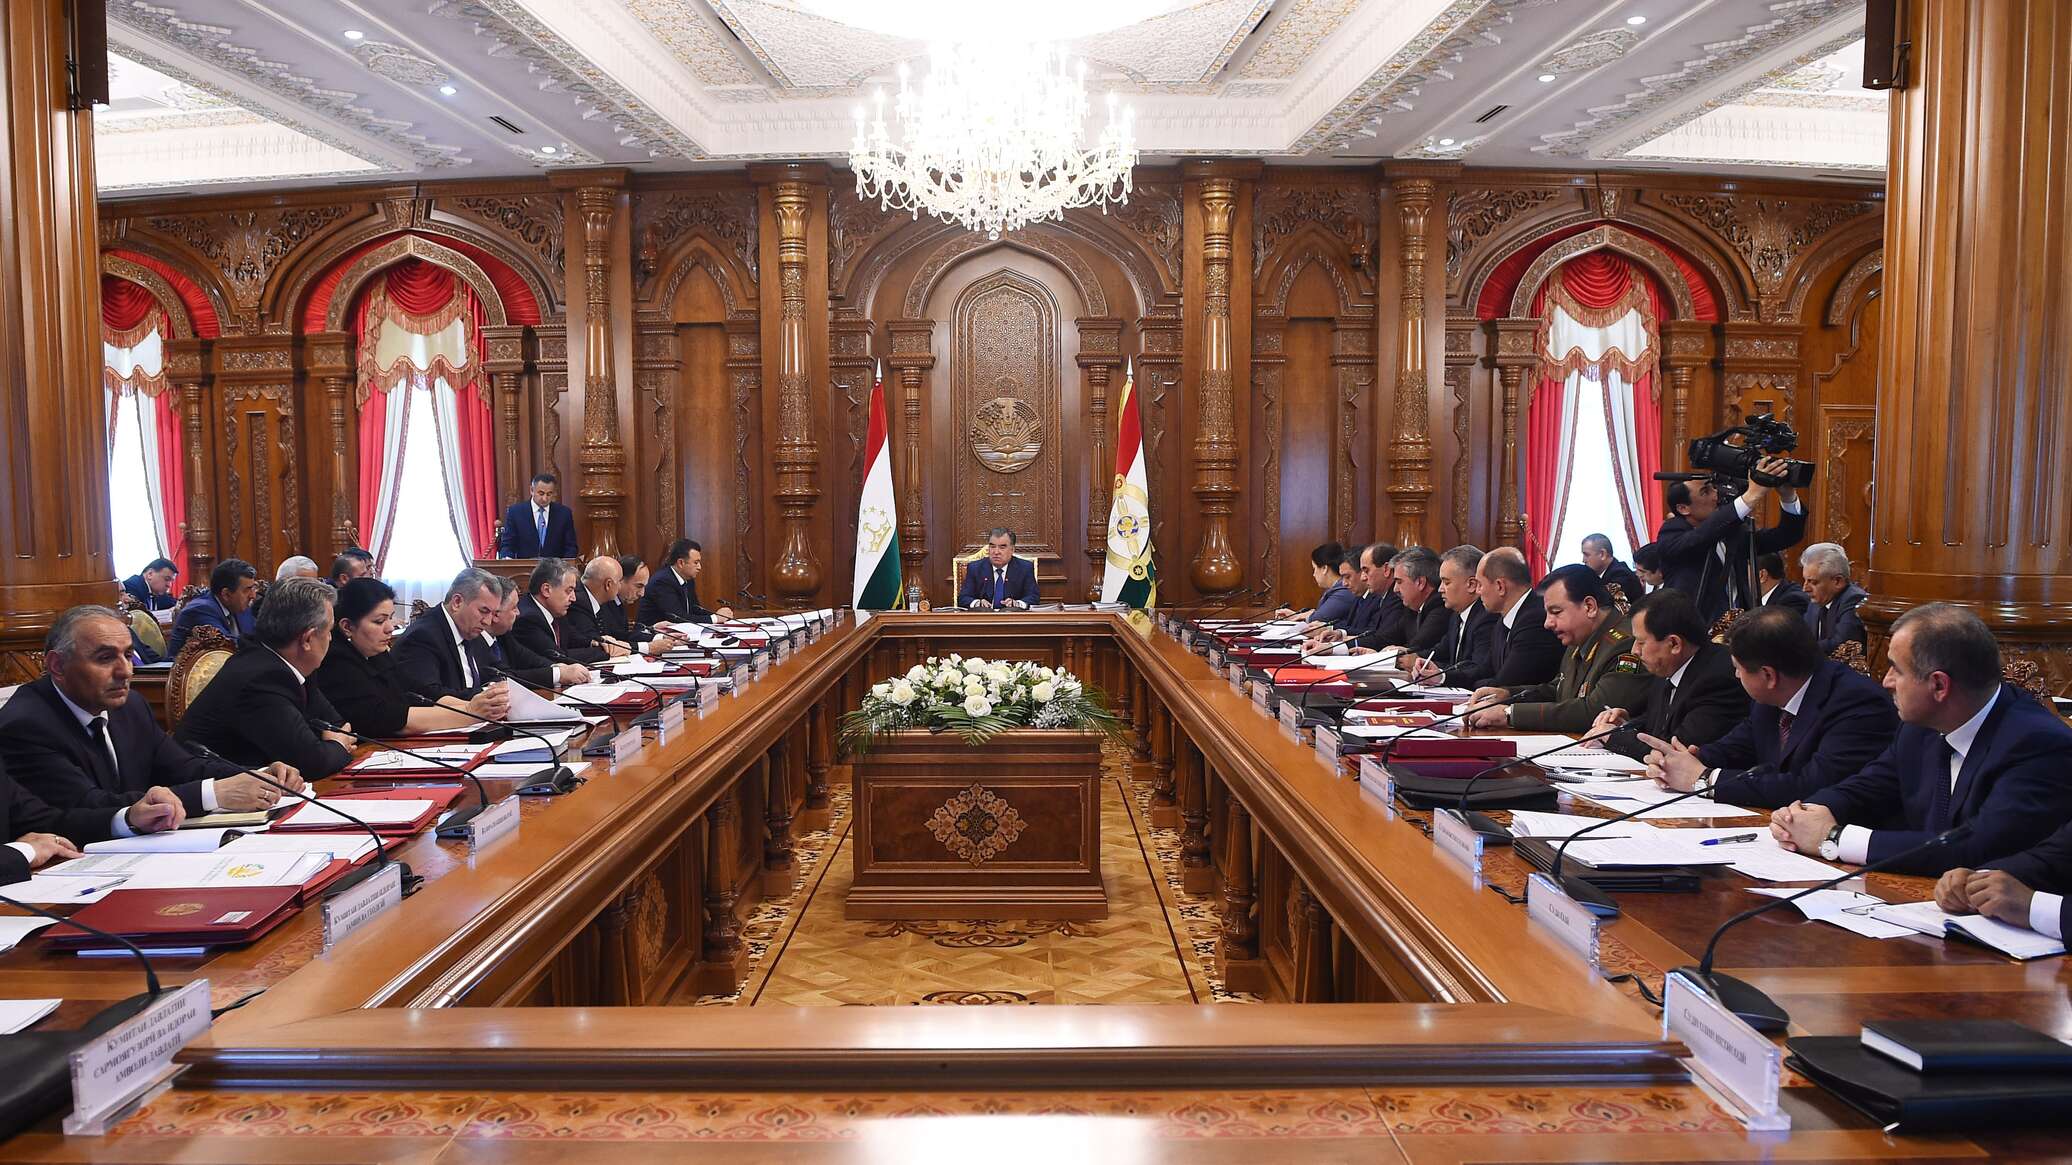 Правительство страны. Заседание правительства Таджикистана. Кабинет президента Республики Таджикистан. Заседание правительства, хлопают, Таджикистан. Заседание правительства.